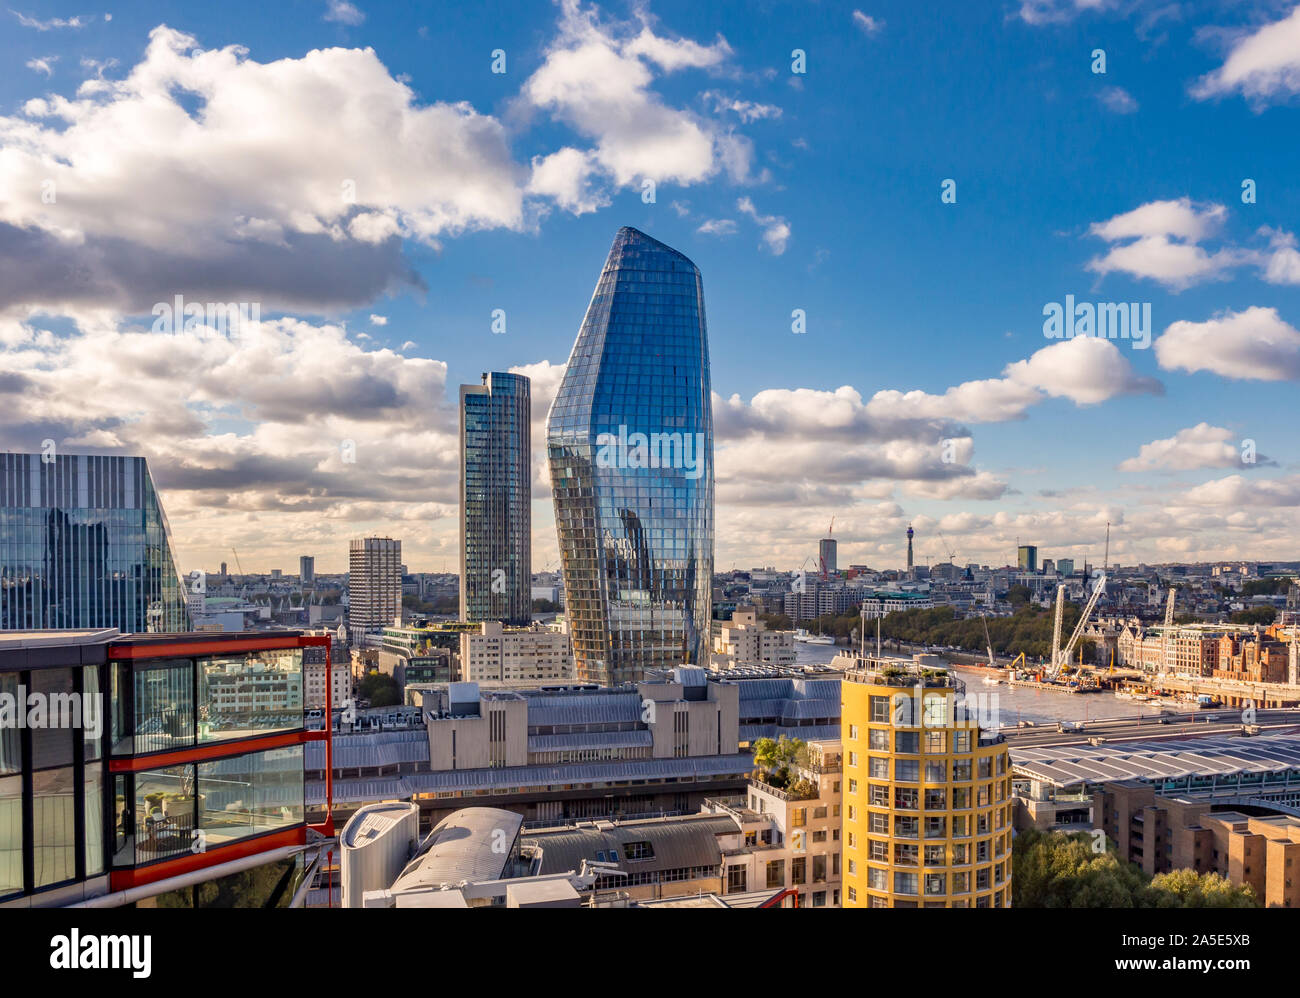 Un bâtiment de Blackfriars (aussi connu sous le nom de vase) et la Tour de Southbank. Appartements en premier plan. Londres, Royaume-Uni. Banque D'Images